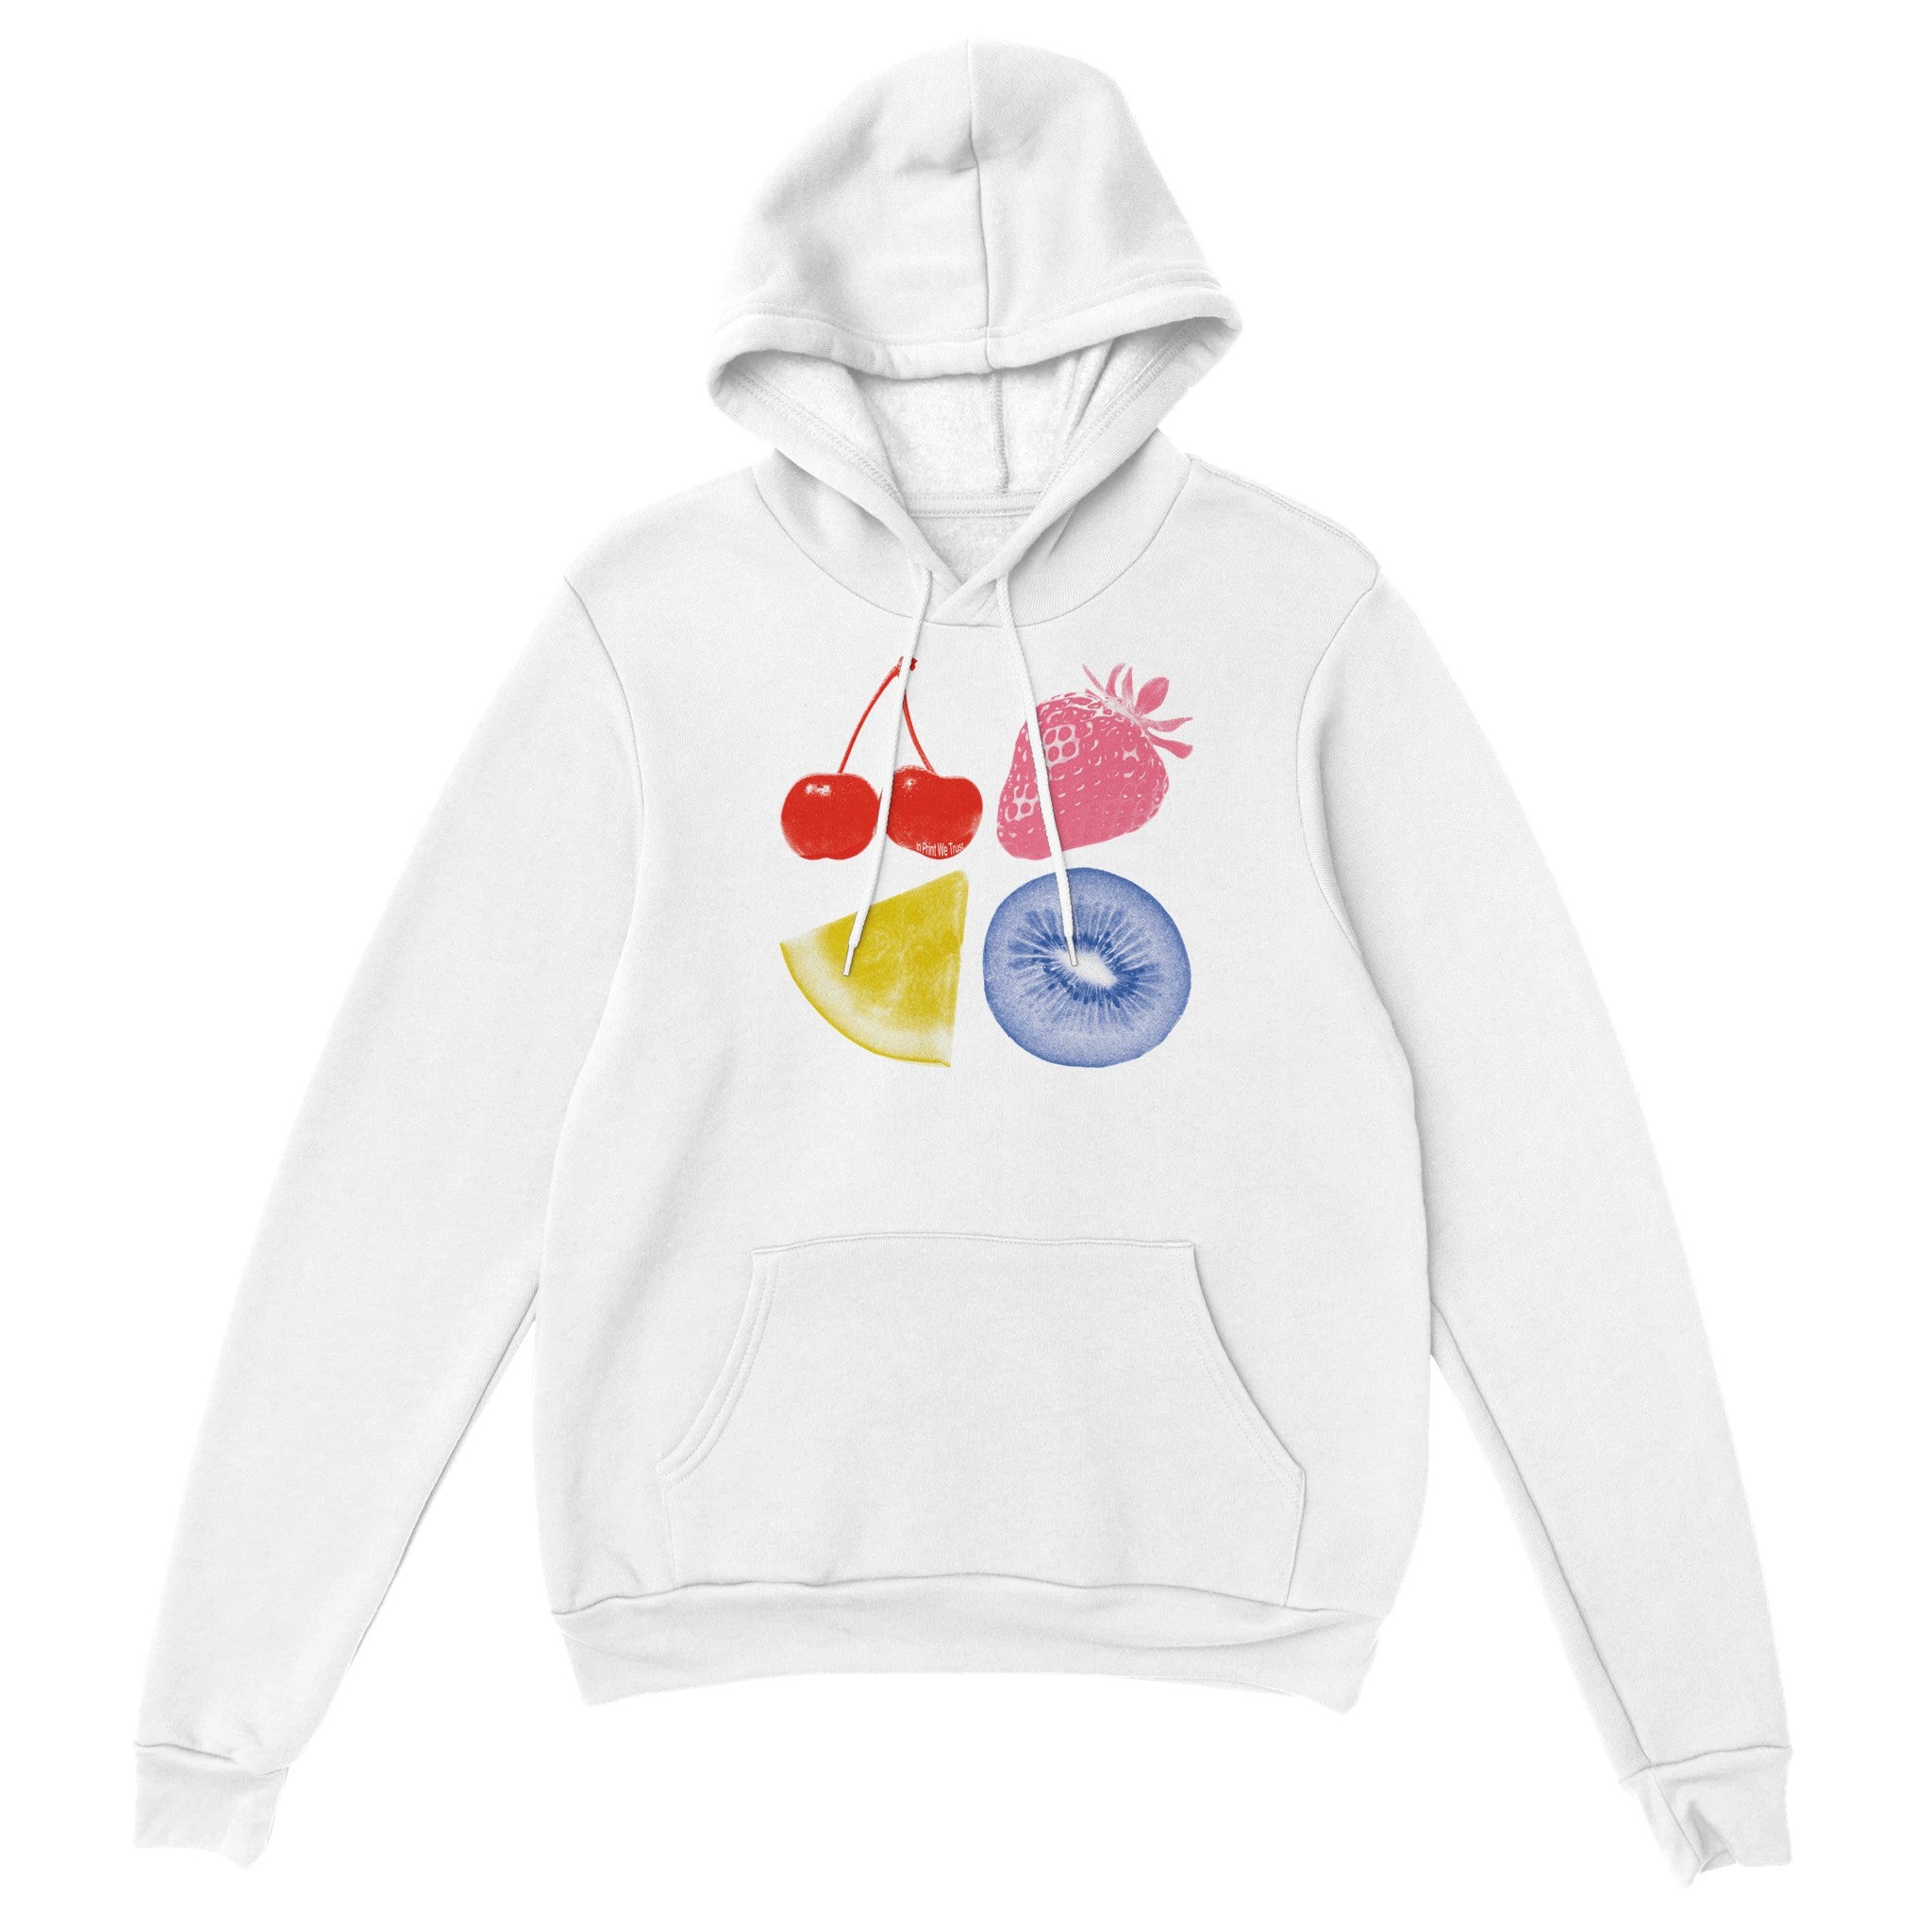 Fruit Man' hoodie